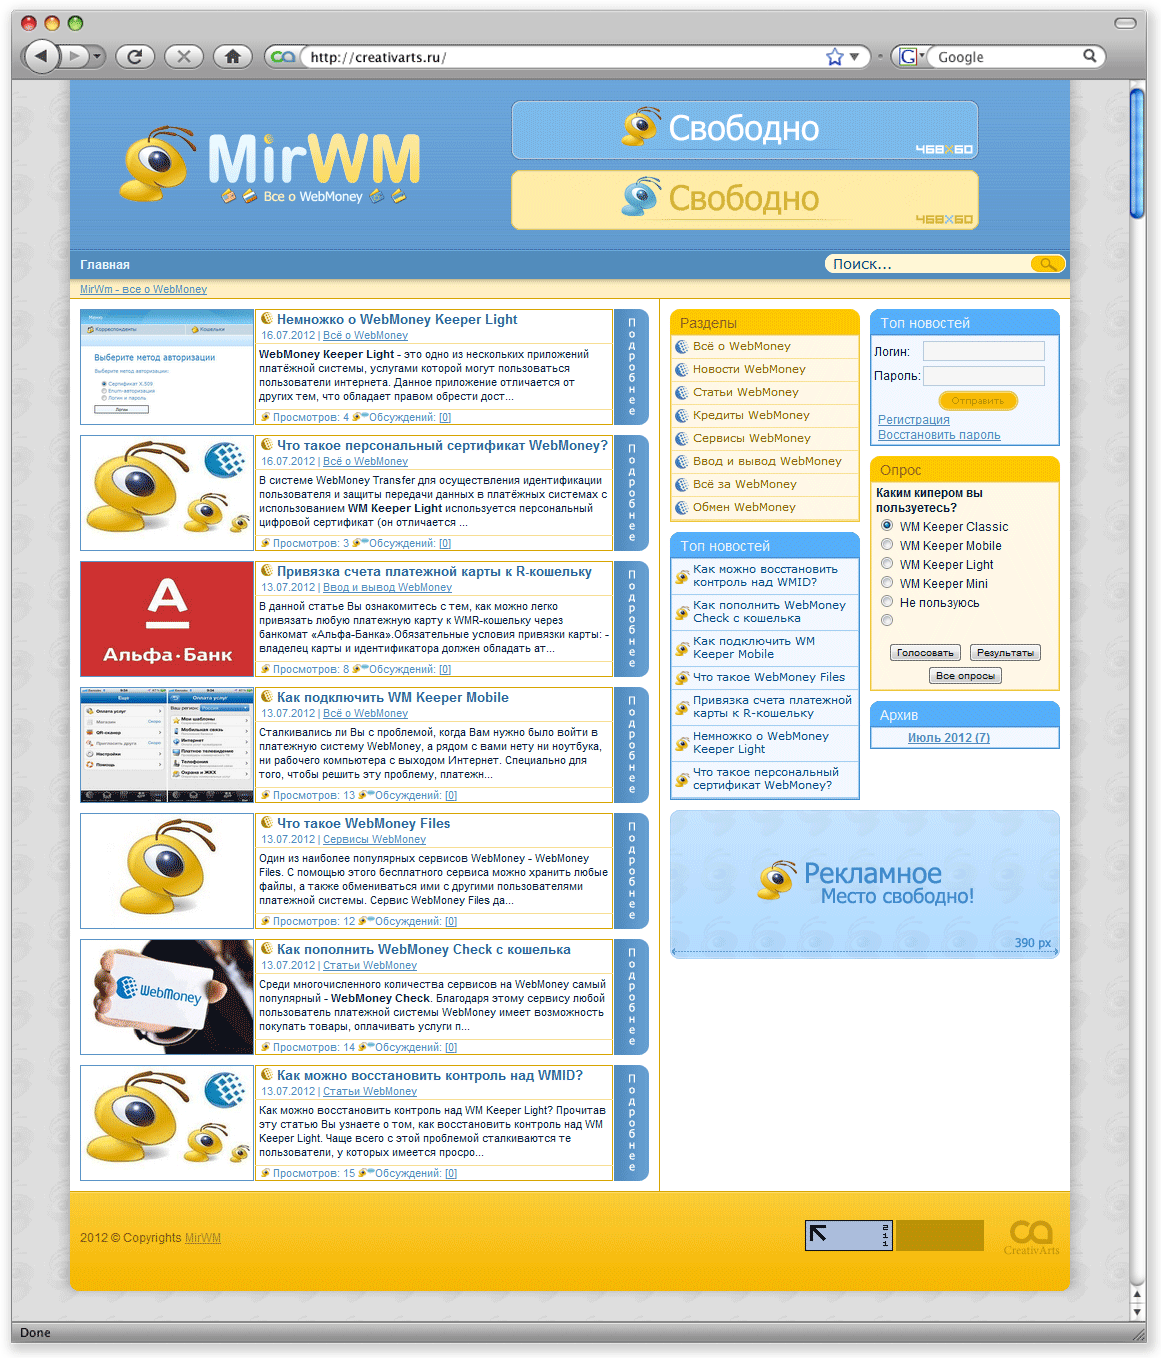 Дизайн MirWM (Макет + свёрстанный шаблон) купить